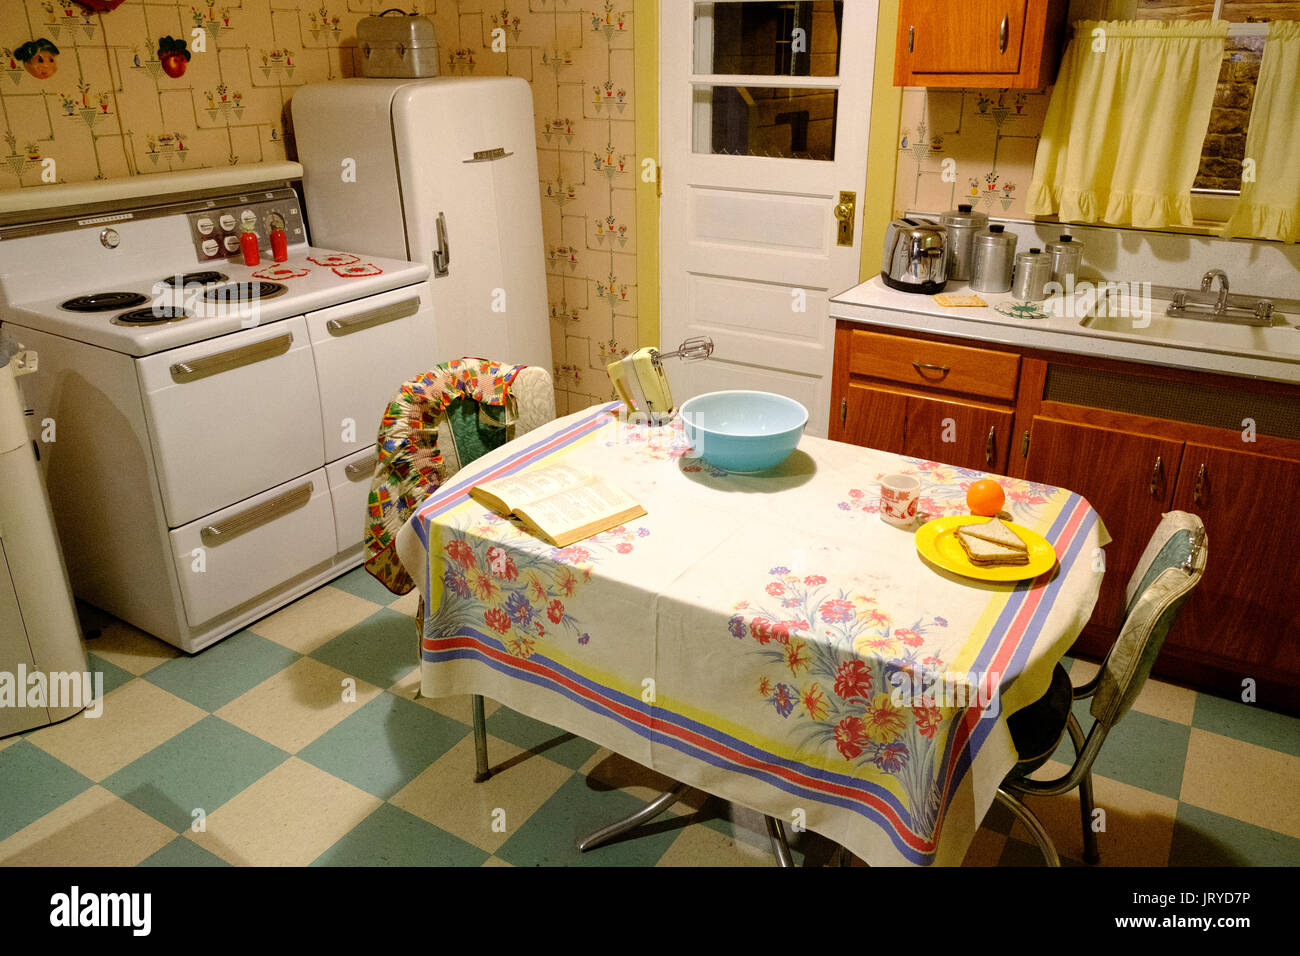 Cocina de posguerra de 1950 habitación en el Centro de Historia de Heinz, Pittsburgh, EE.UU. Foto de stock